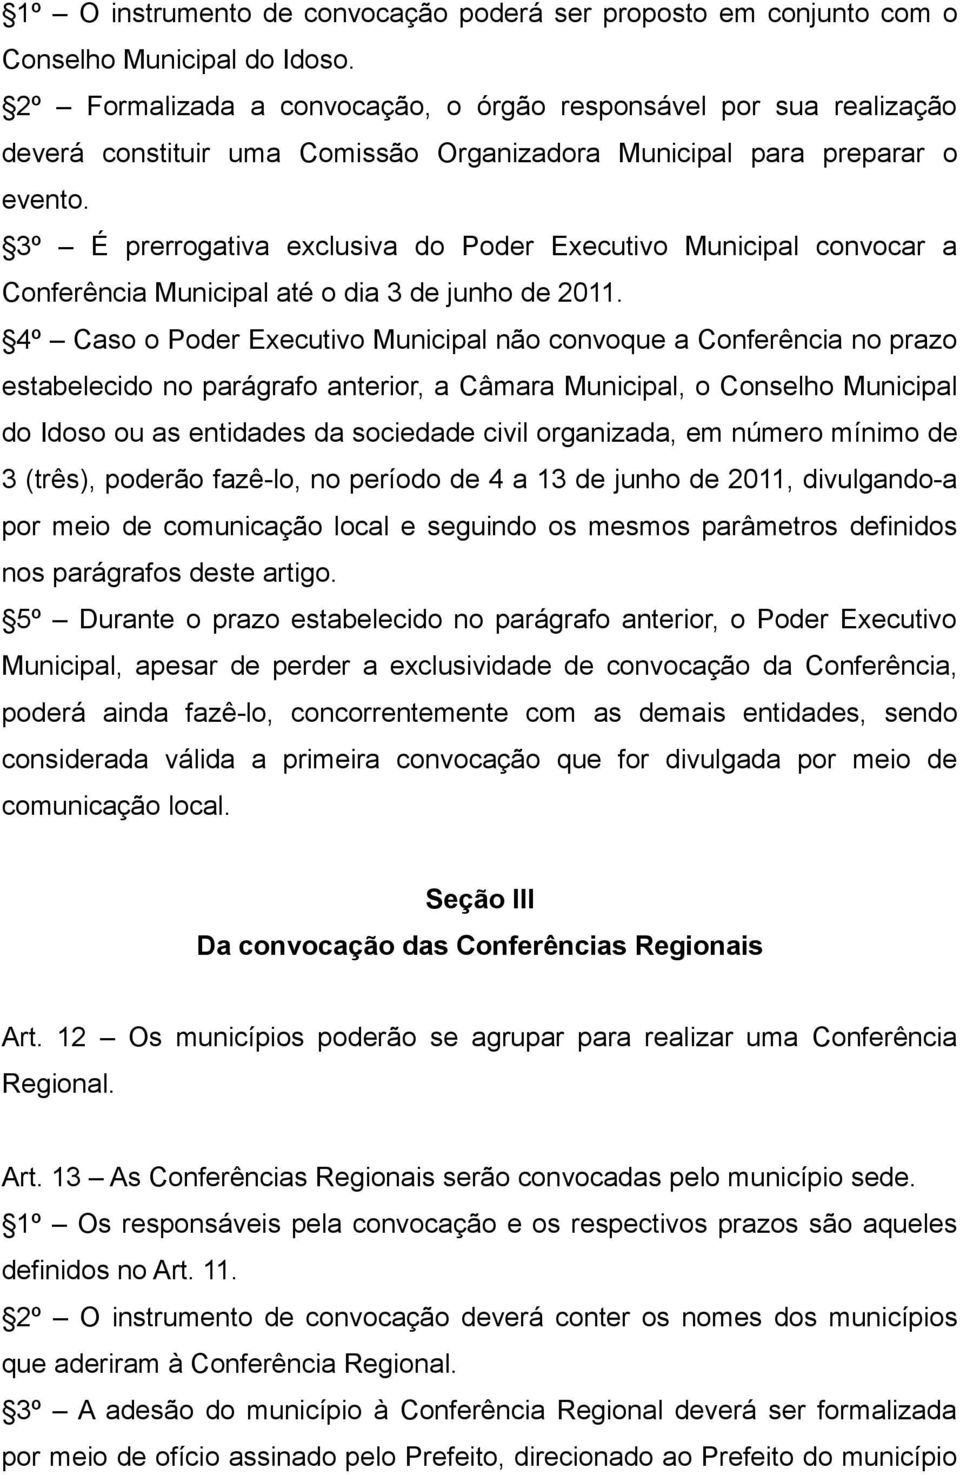 3º É prerrogativa exclusiva do Poder Executivo Municipal convocar a Conferência Municipal até o dia 3 de junho de 2011.